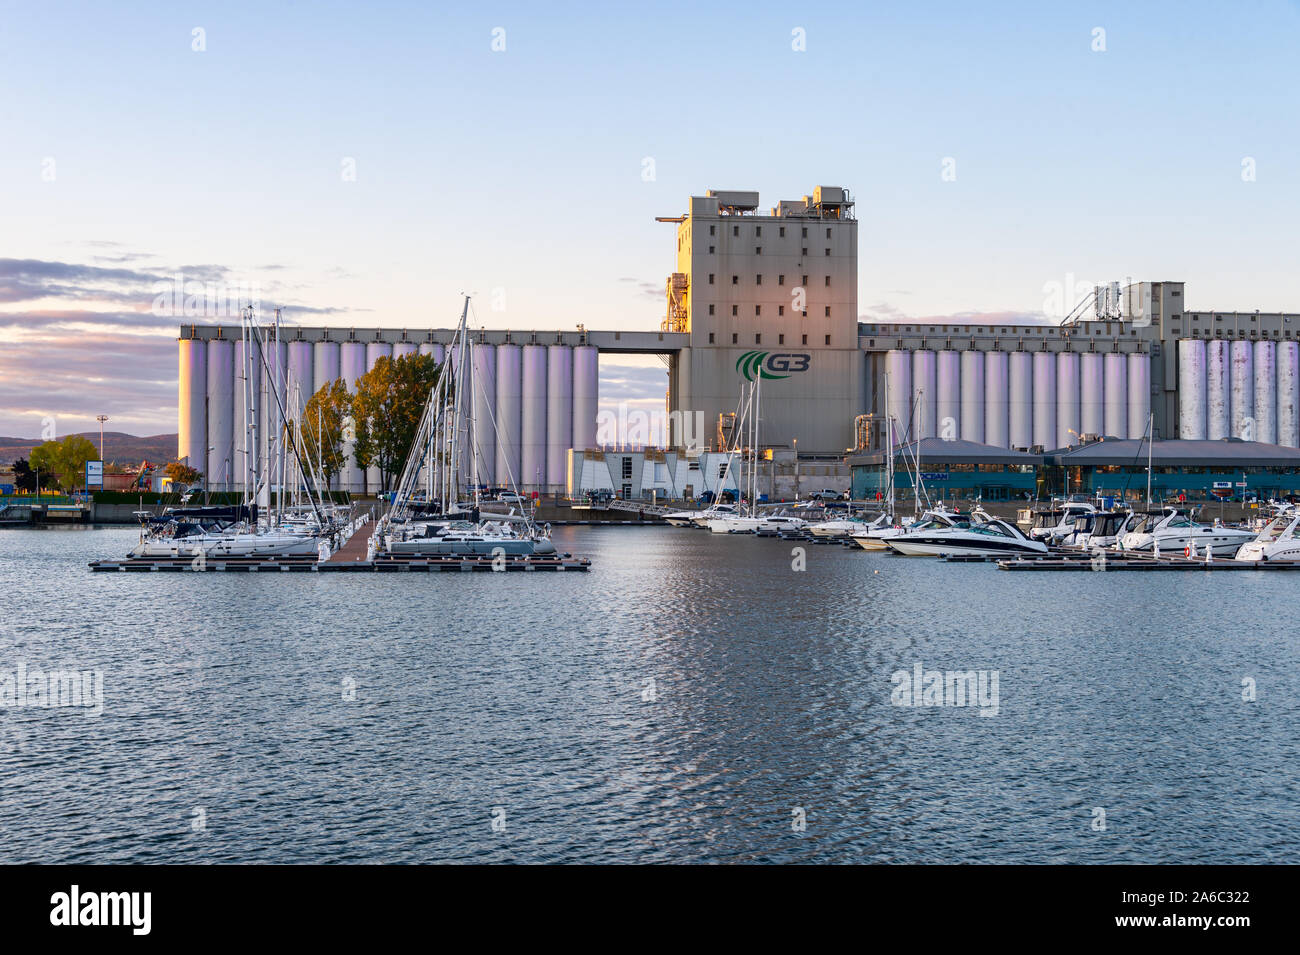 La ville de Québec, Canada - 4 octobre 2019 : le port de Québec au coucher du soleil, avec les silos à grains dans l'arrière-plan. Banque D'Images